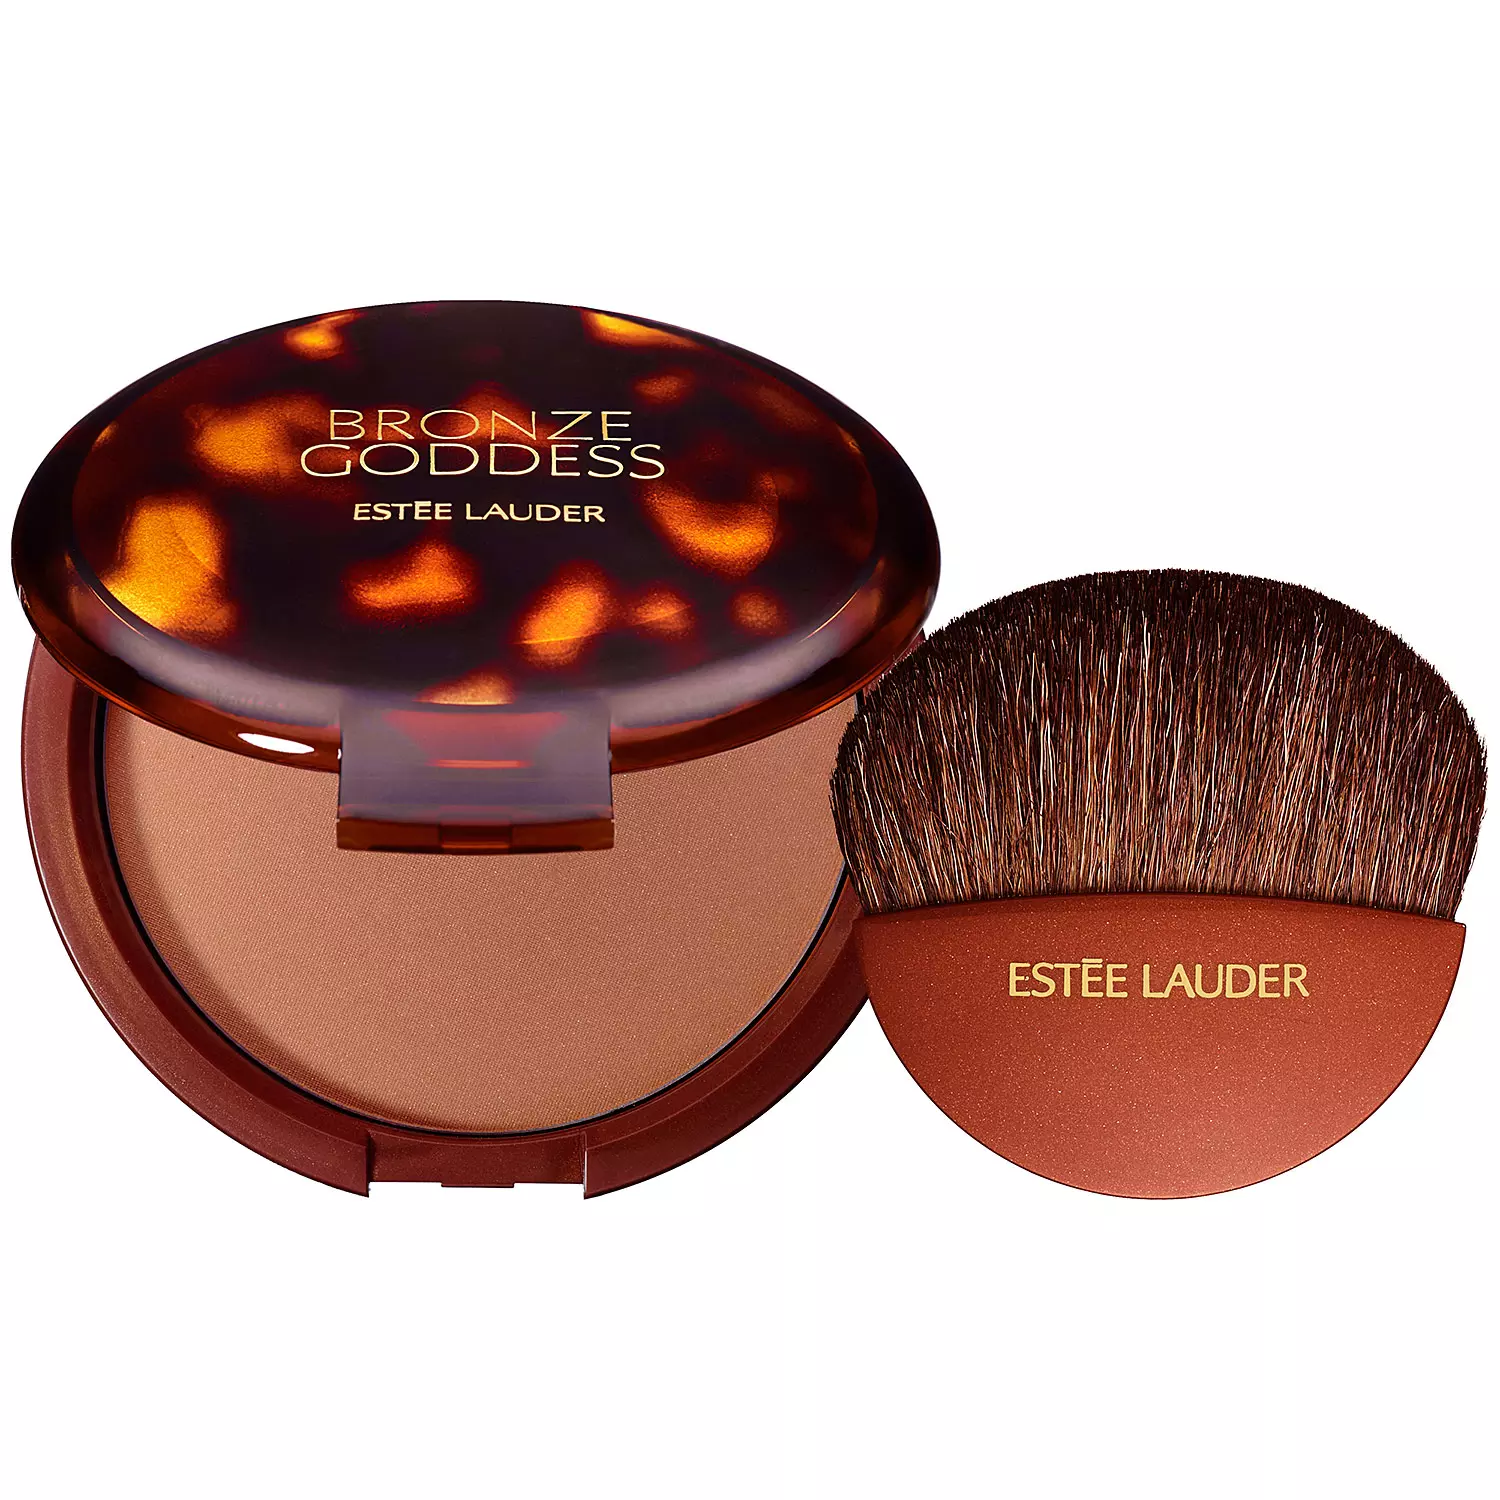 menneskemængde rolige gået i stykker Estee Lauder Bronze Goddess Light 01 | Glambot.com - Best deals on cosmetics